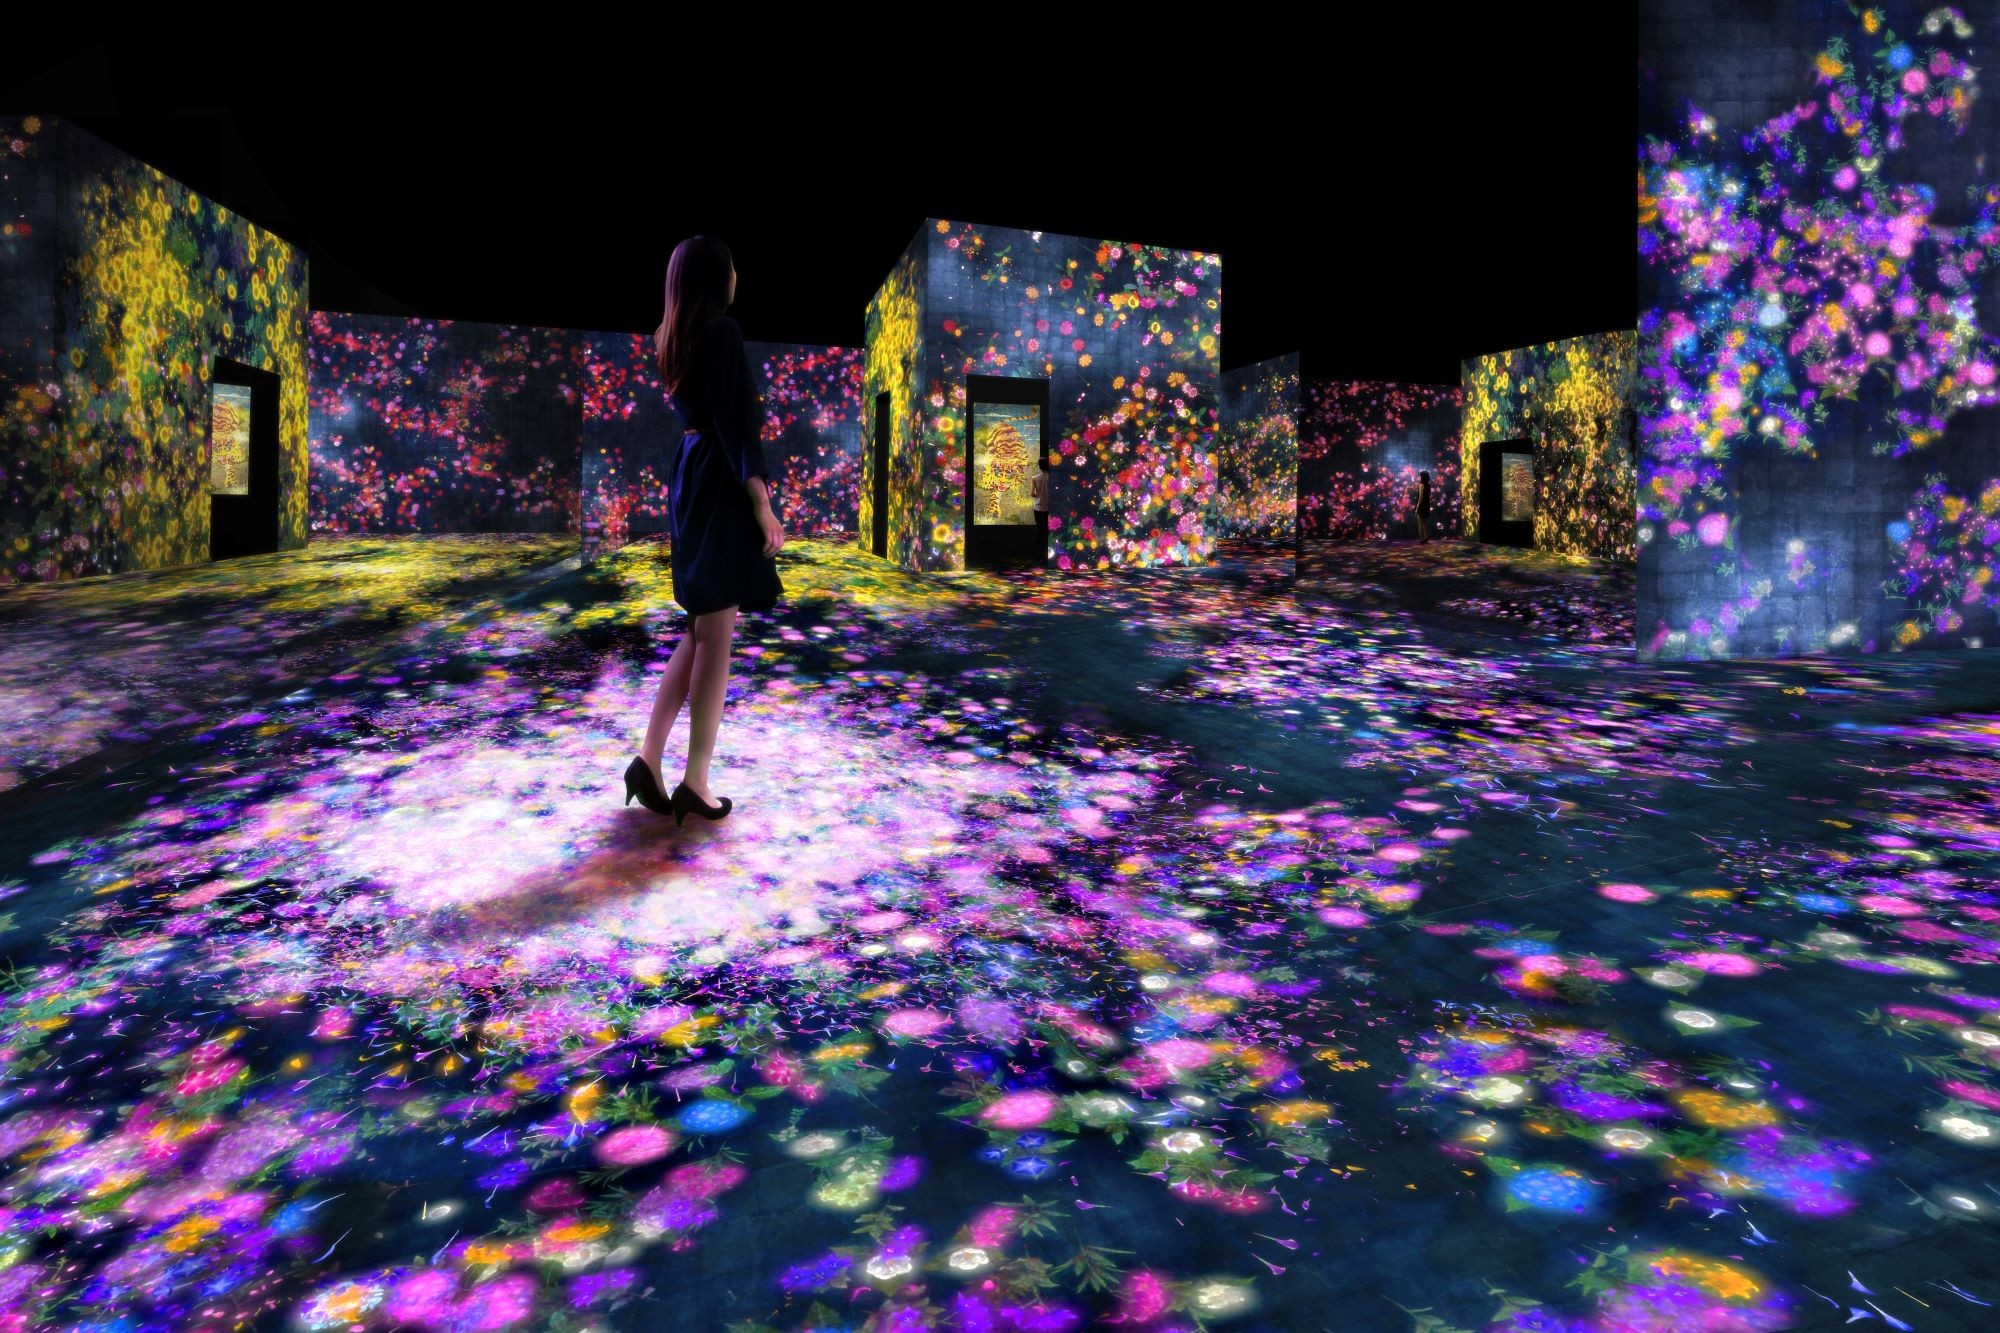 『花と人の森、埋もれ失いそして生まれる / Forest of Flowers and People: Lost, Immersed and Reborn』 teamLab, 2017, Interactive Digital Installation, Endless, Sound: Hideaki Takahashi 中国・北京でのチームラボ個展「teamLab: Living Digital Forest and Future Park」にも携わった。